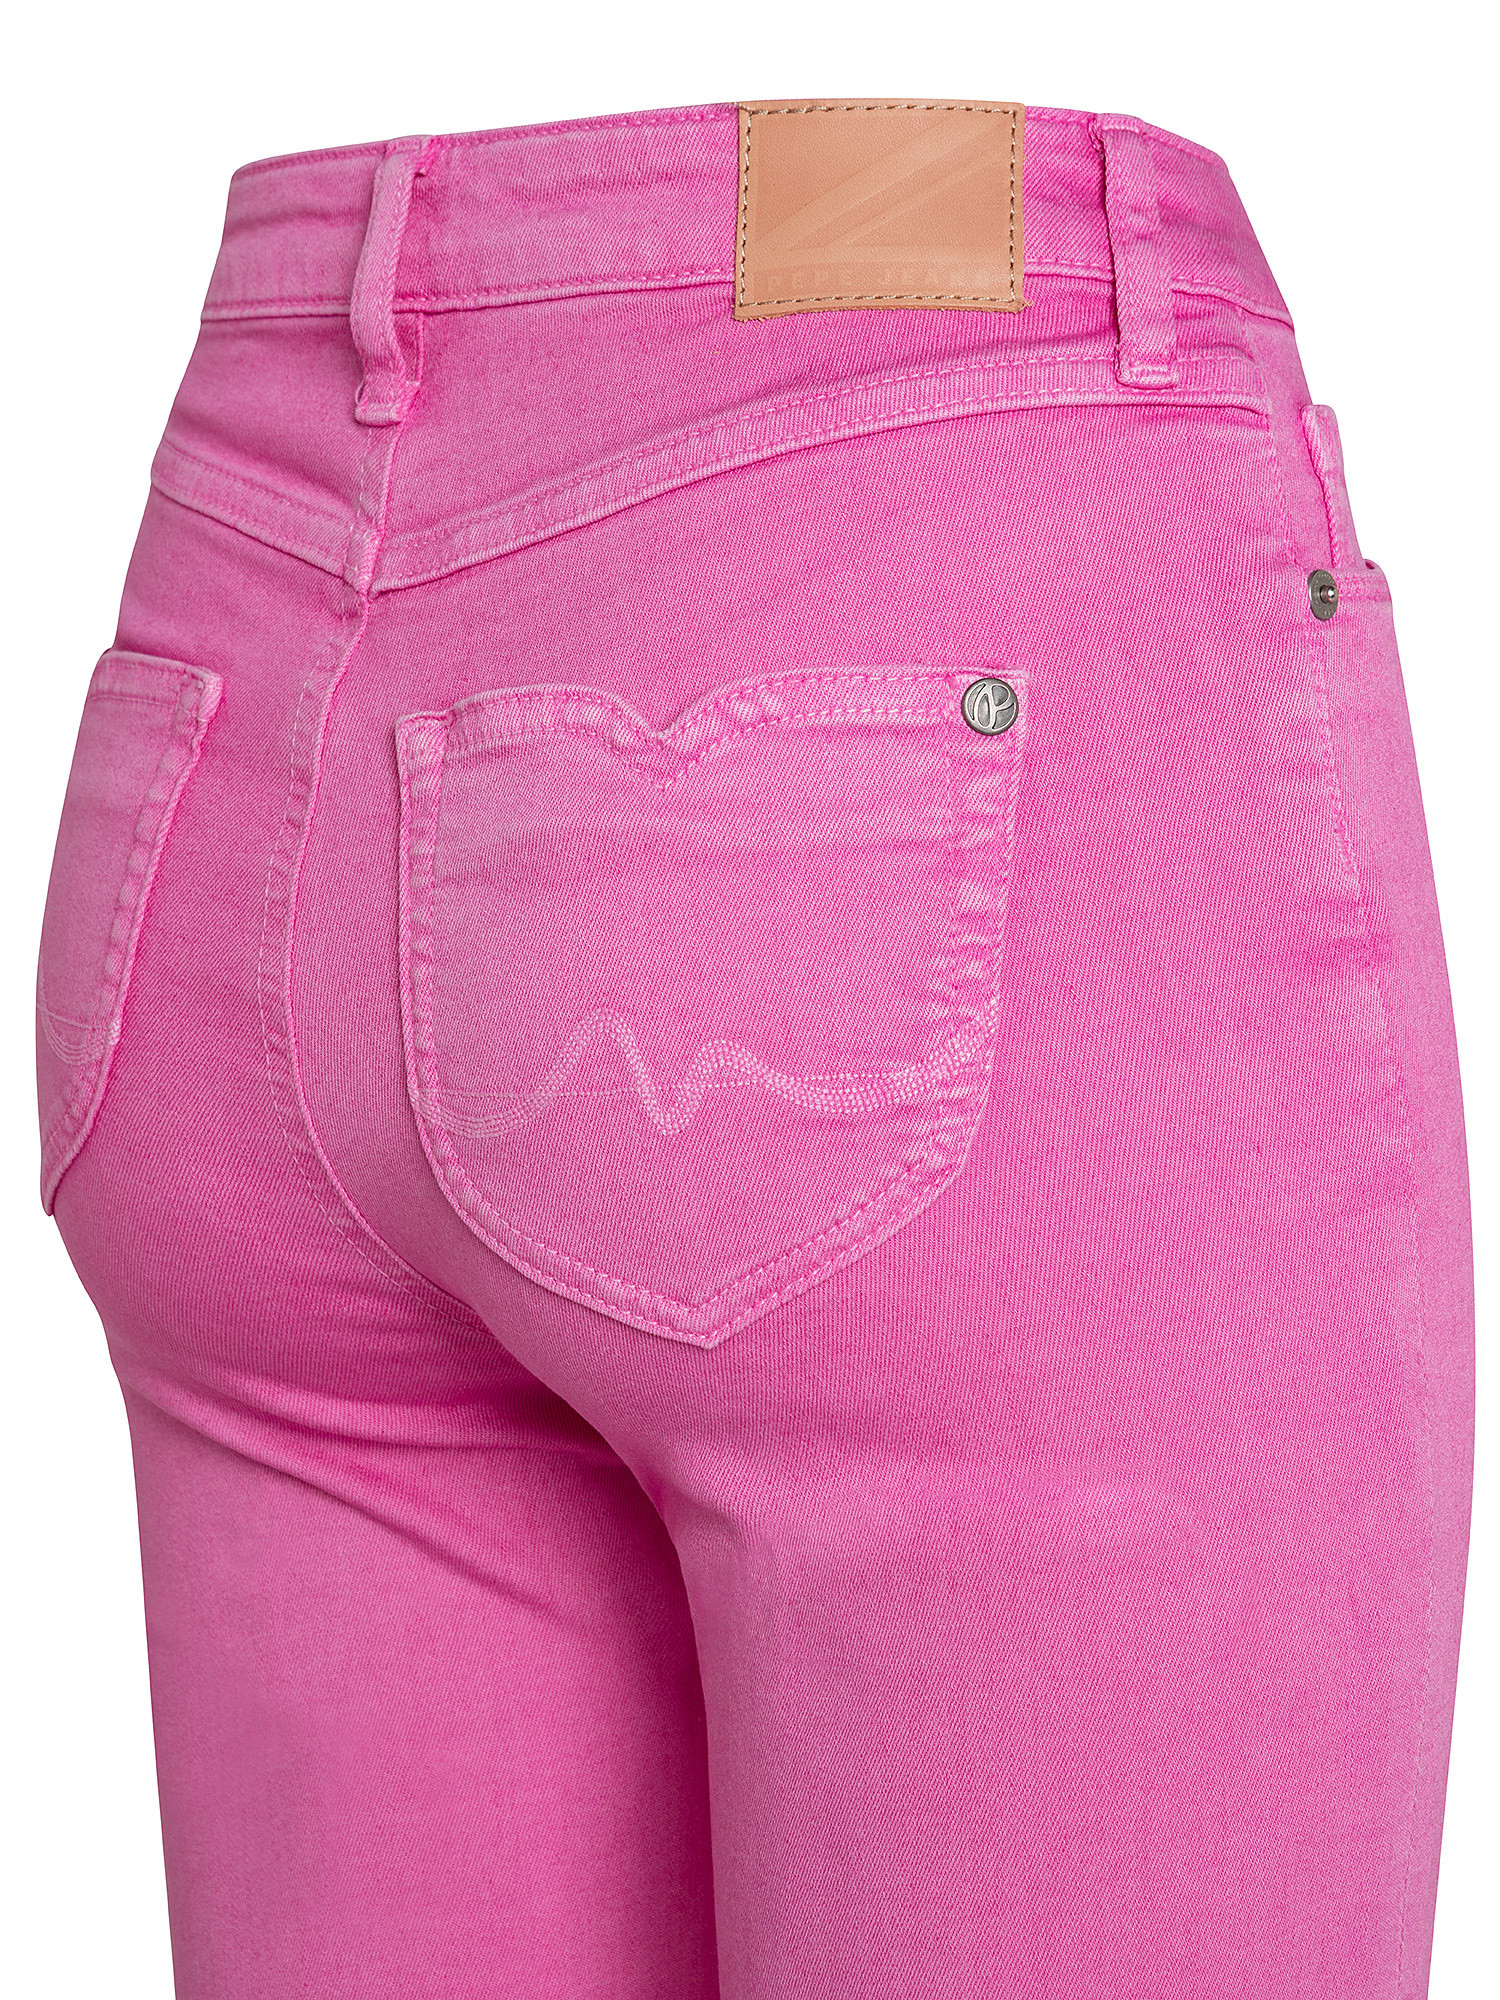 Willa five-pocket jeans, Pink Flamingo, large image number 2